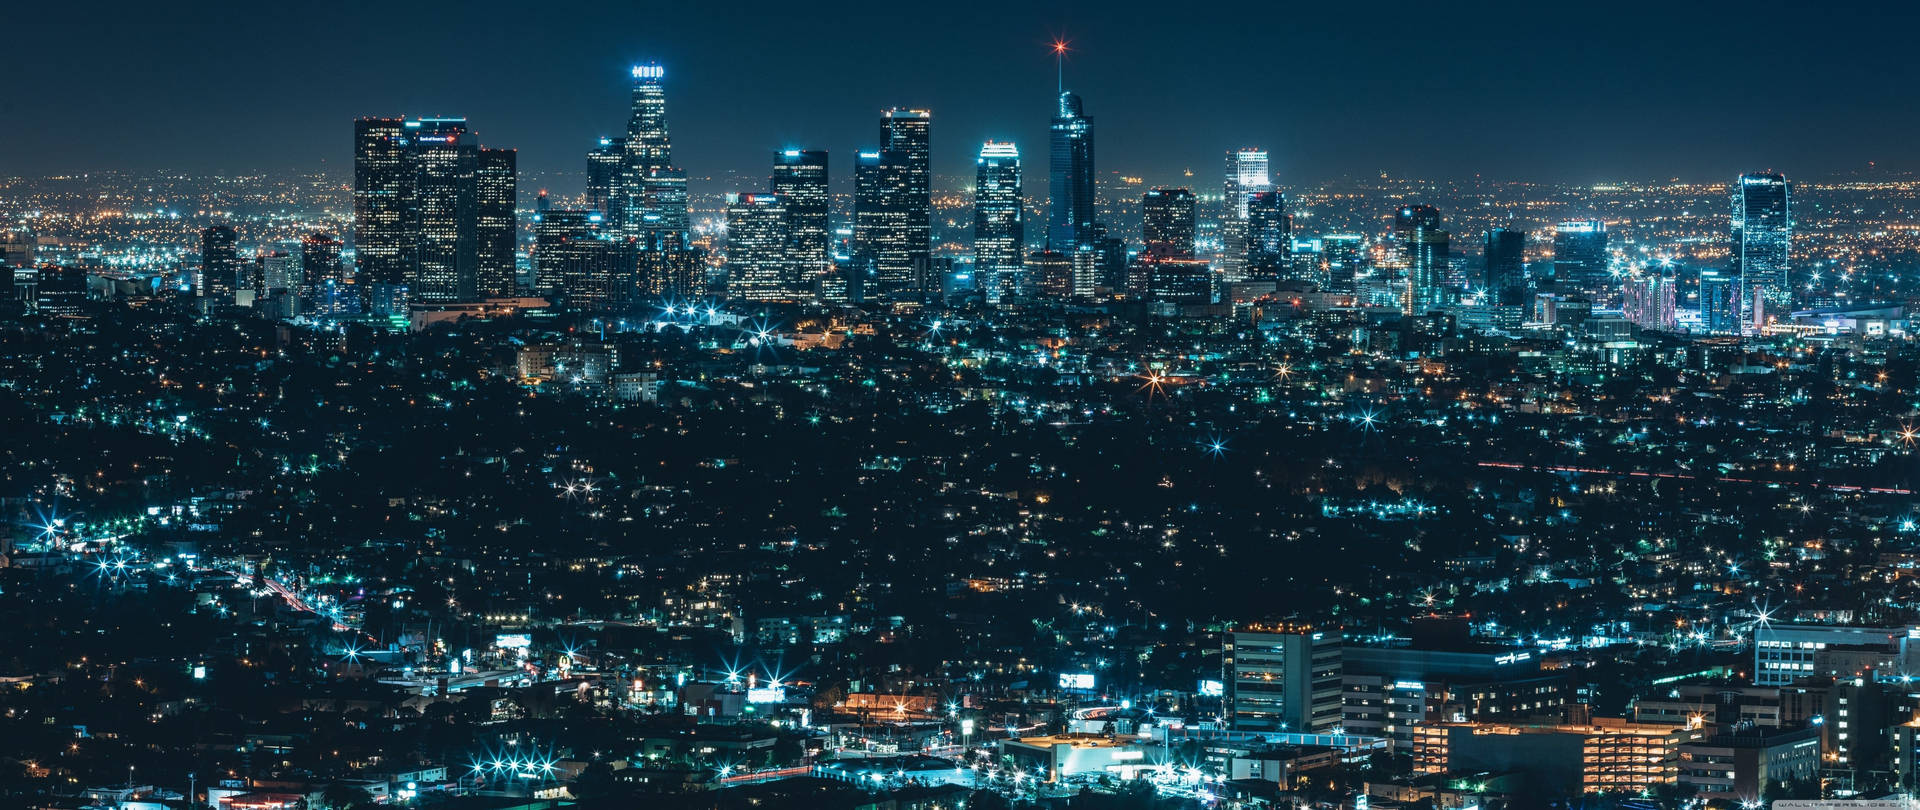 Impresionantepanorama De Los Ángeles En 4k. Fondo de pantalla